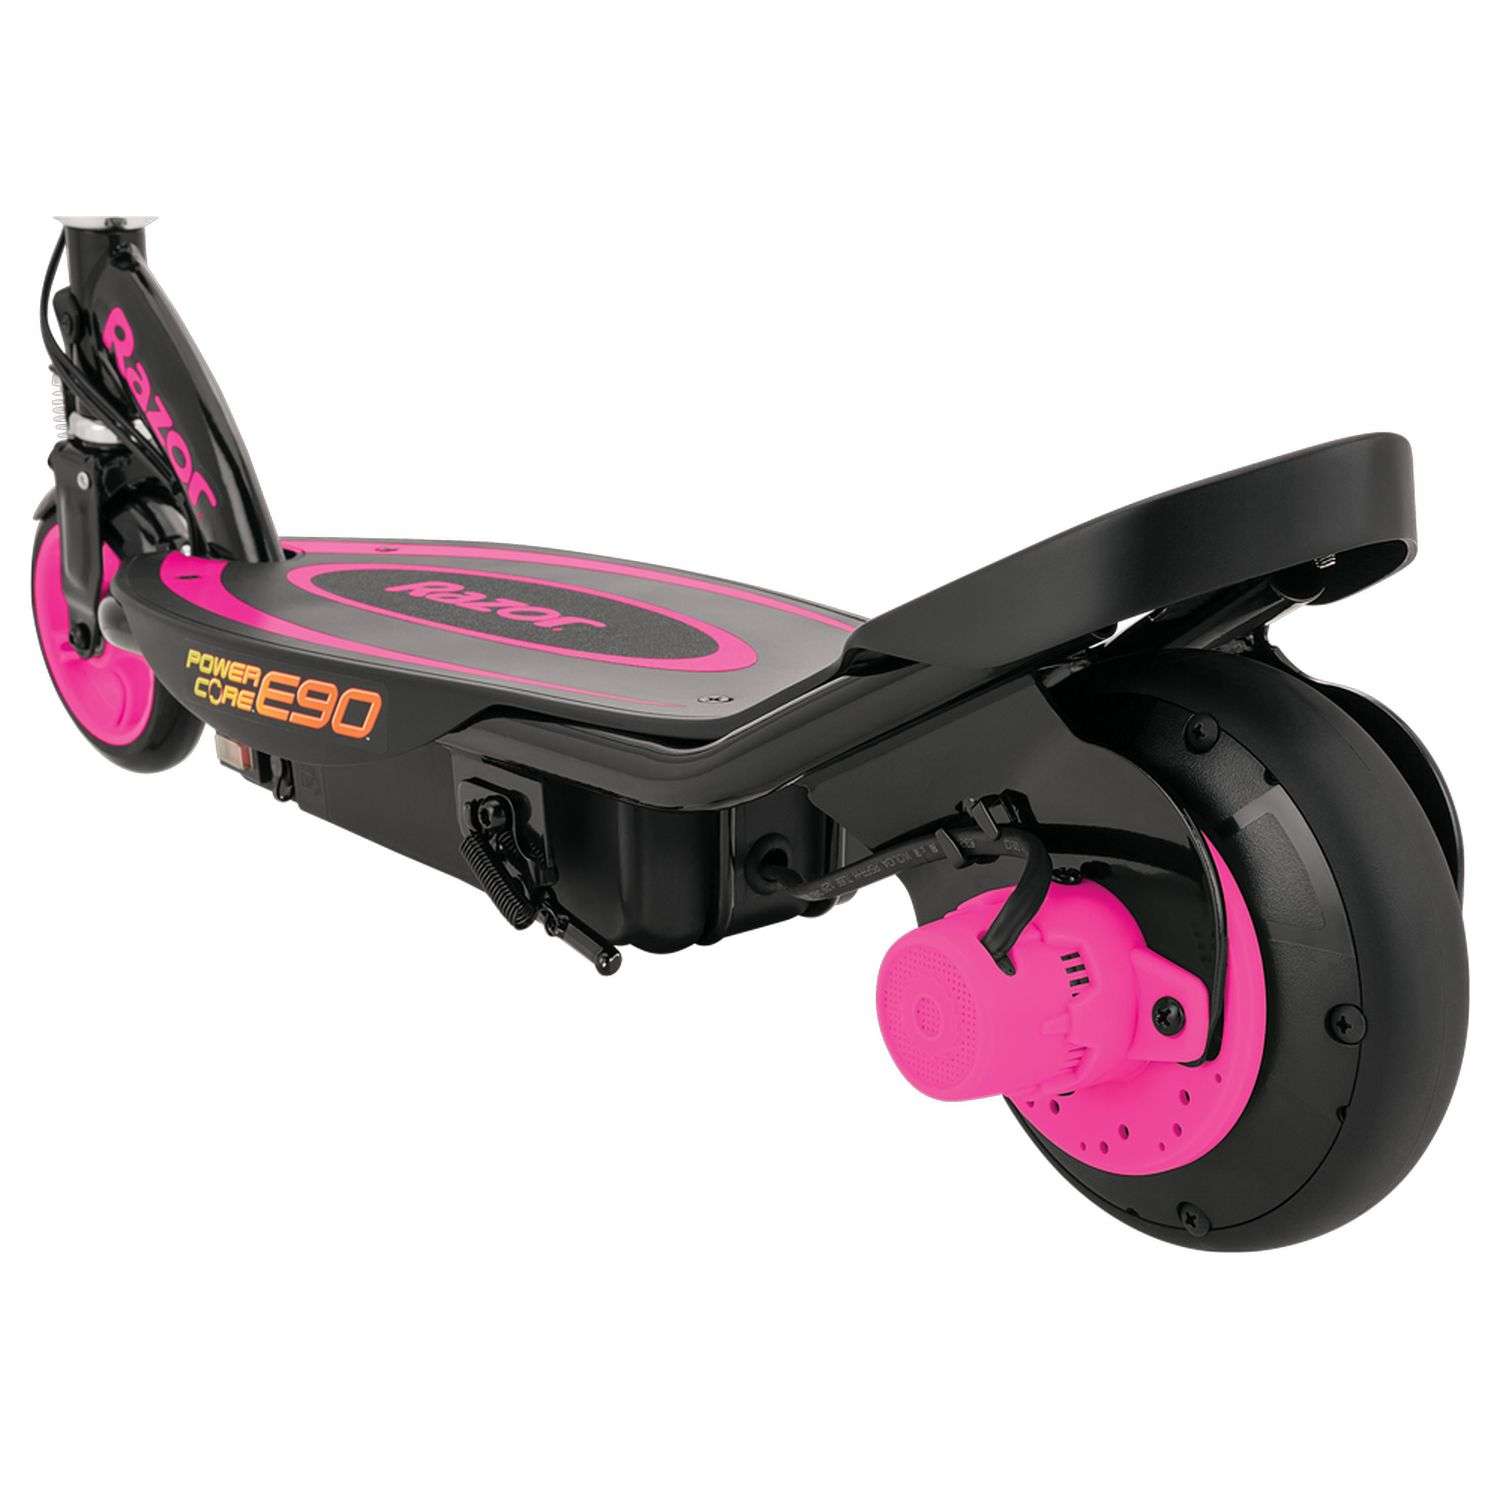 Электросамокат для детей RAZOR Power Core E90 розовый детский электрический с запасом хода до 90 минут - фото 8